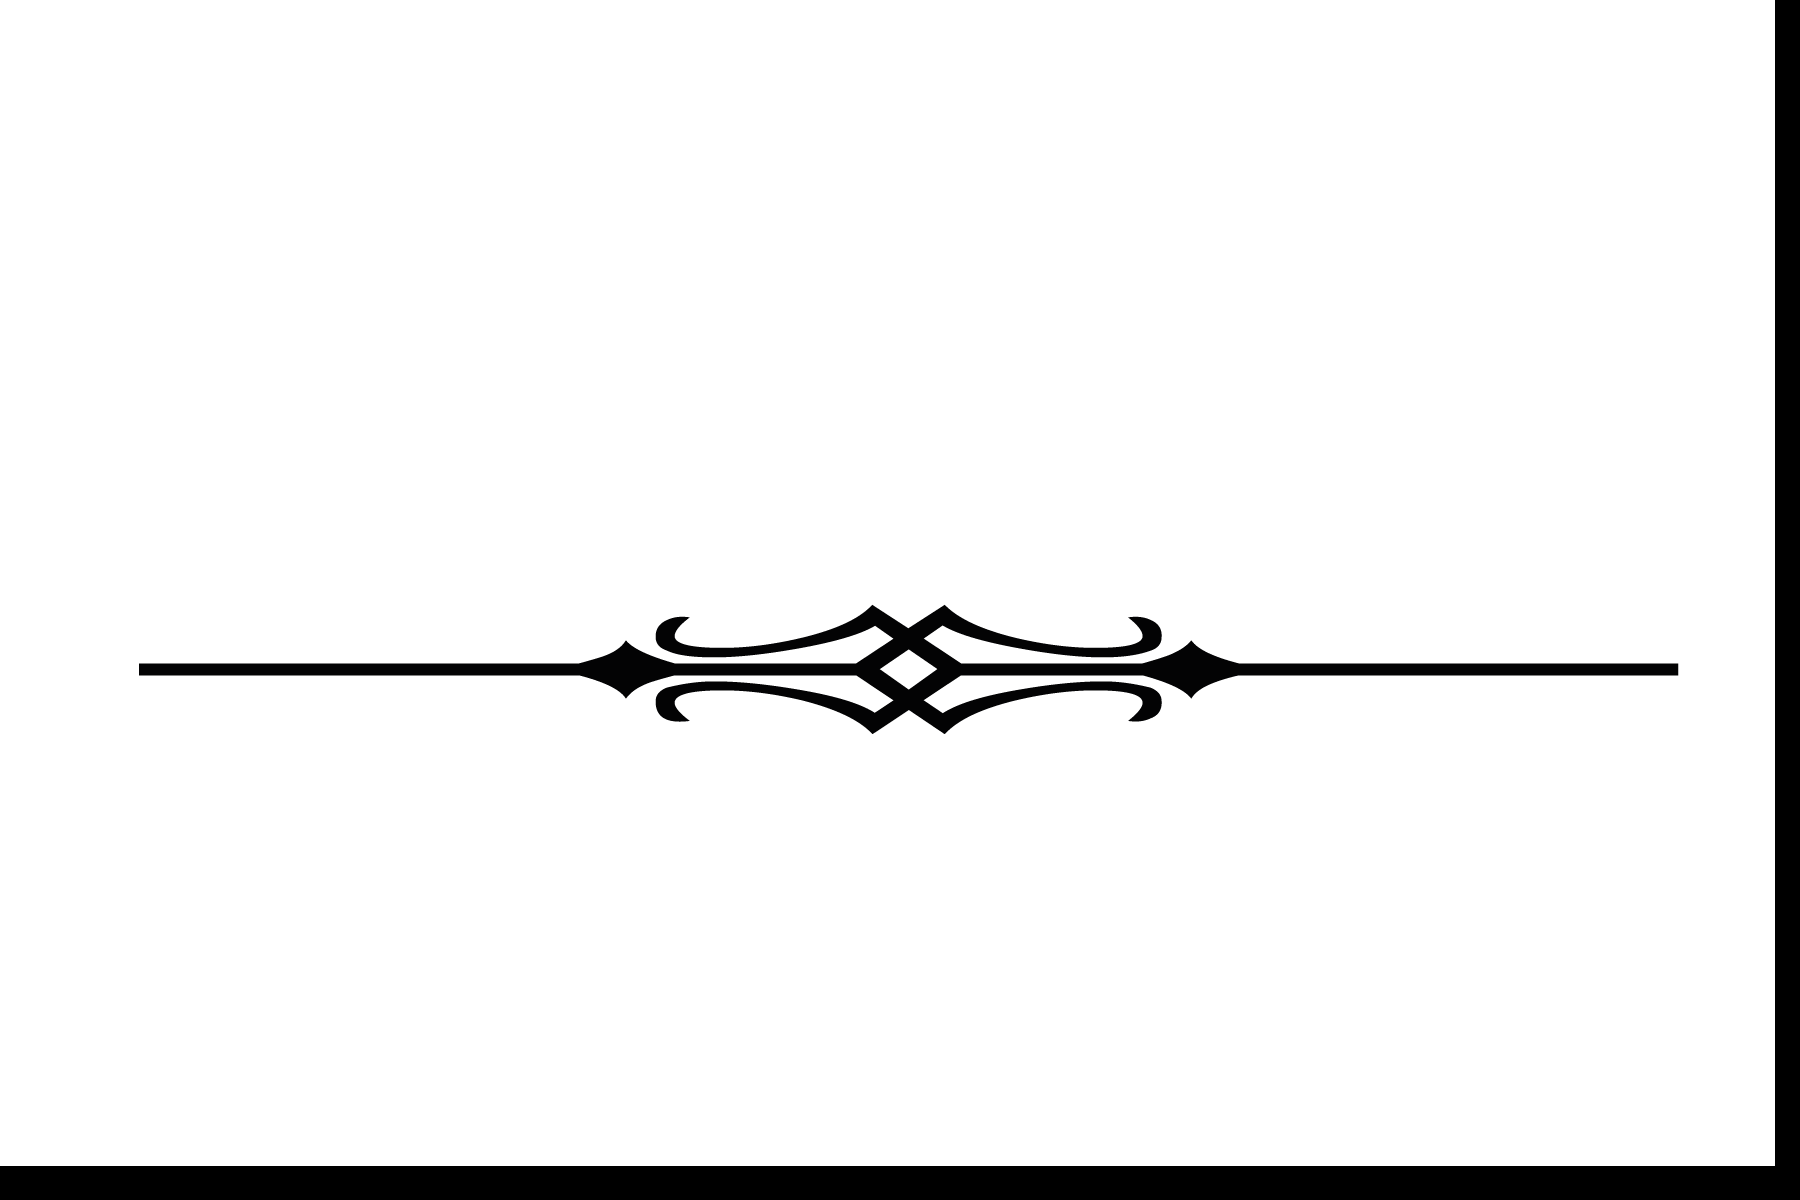 simple divider line design